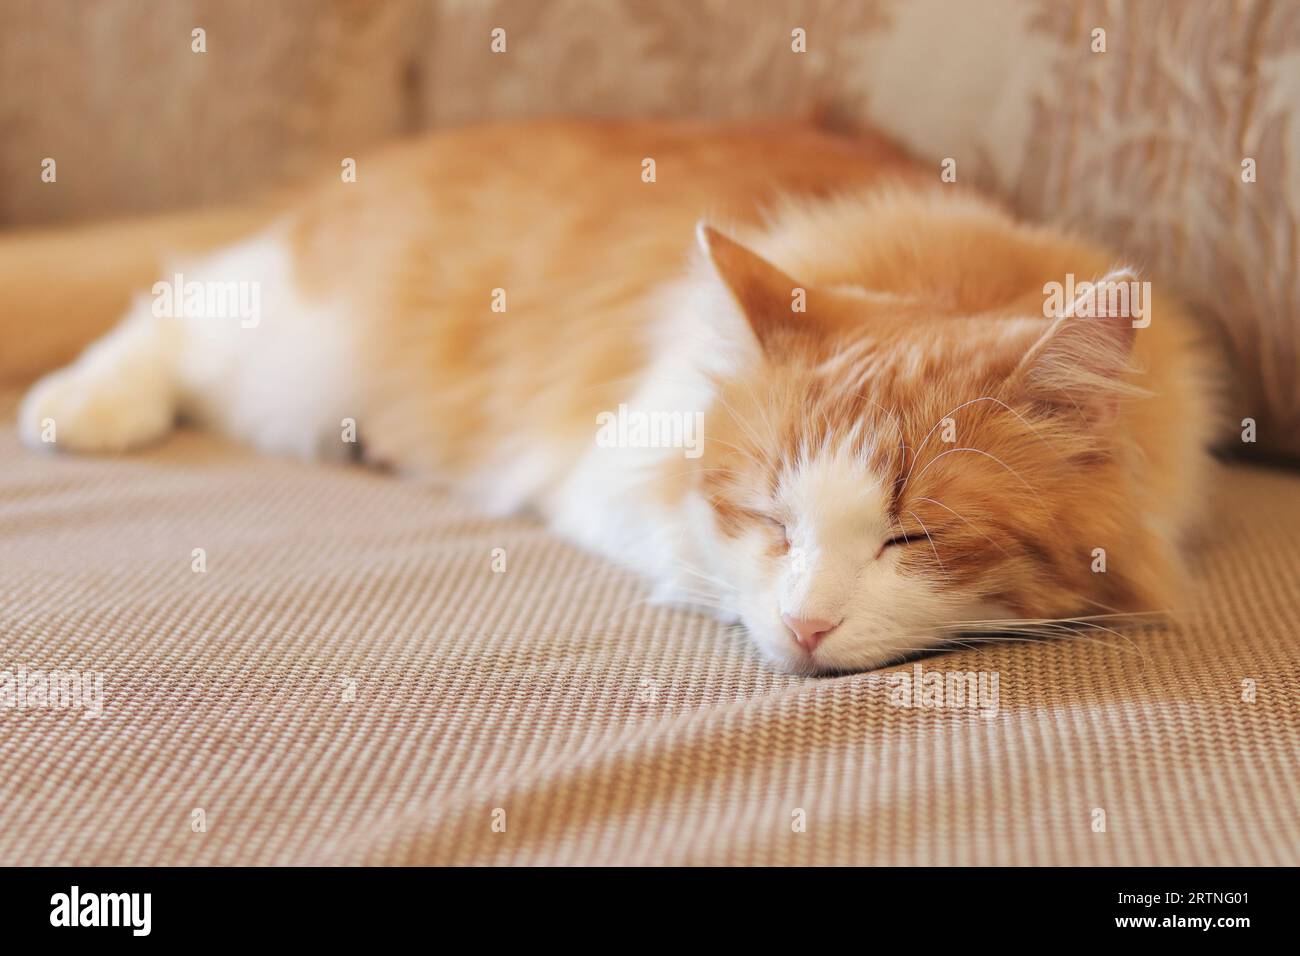 Eine weißrote Katze schläft süß auf dem Sofa. Nahaufnahme des Gesichts einer schlafenden Katze. Das Konzept von gesundem Schlaf, eine gemütliche Atmosphäre im Haus Stockfoto